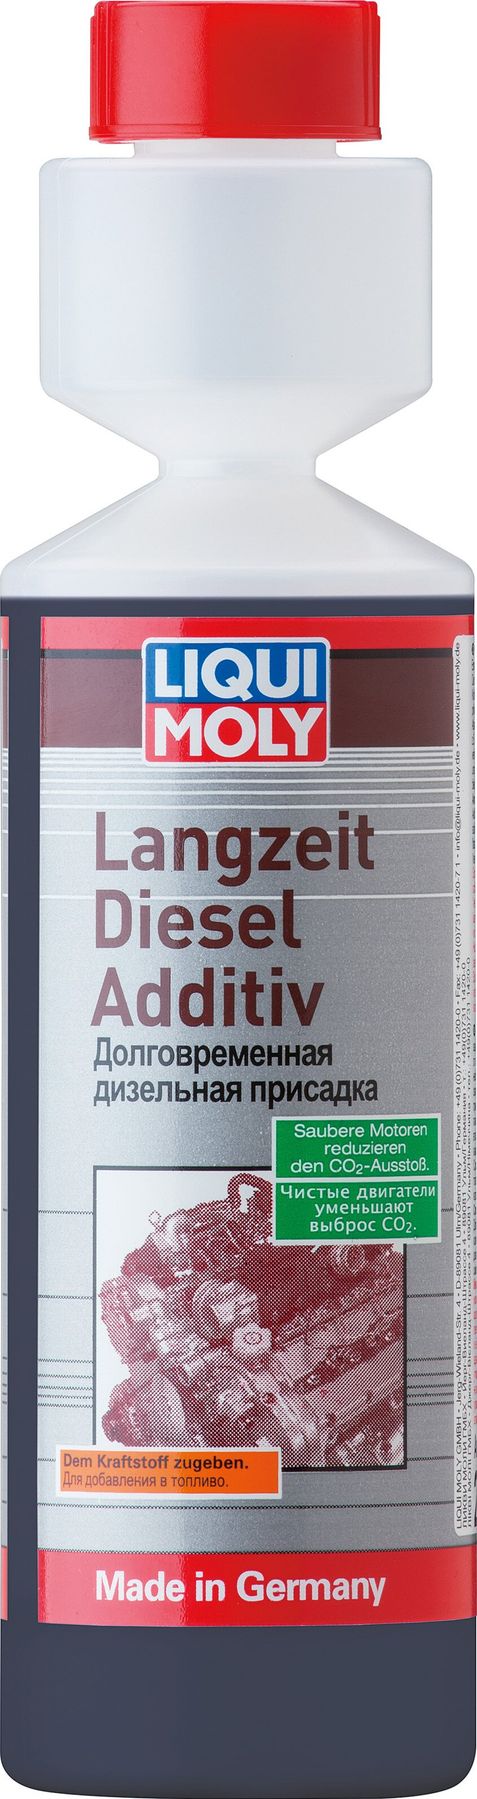 Liqui Moly Langzeit Diesel Additiv - долговременная дизельная присадка .